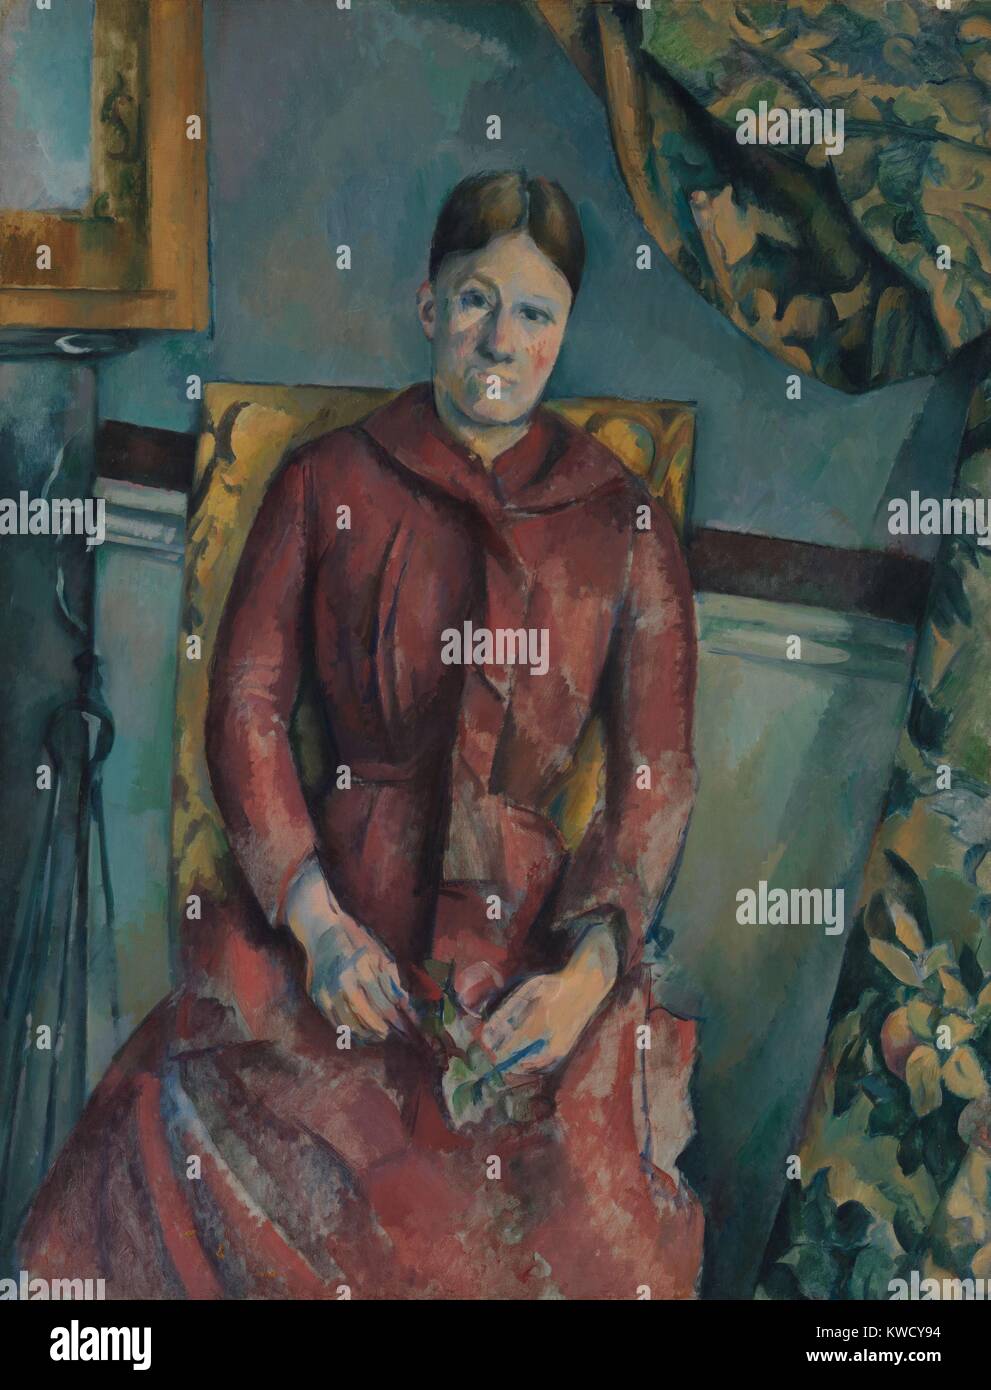 Madame Cézanne, par Paul Cezanne, 1888-90, le français postimpressionnistes peinture, huile sur toile. Portrait de l'artiste femme portant une robe rouge dans un intérieur meublé de leur appartement loué au 15 quai d'Anjou à Paris (BSLOC 2017 5 17) Banque D'Images